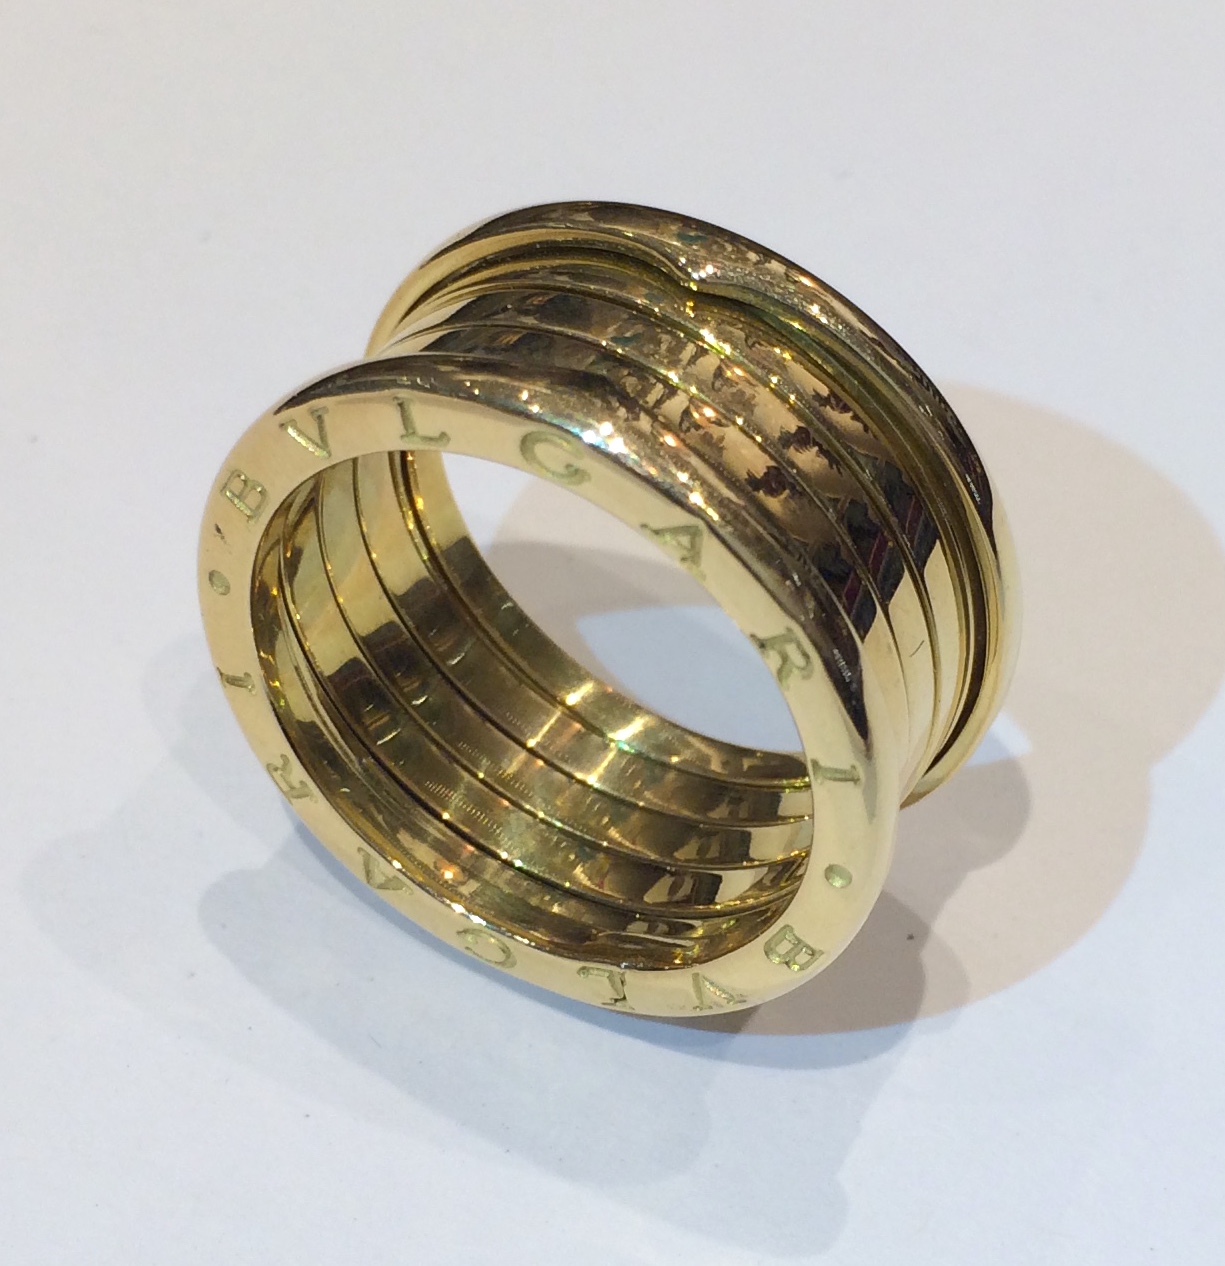 Bulgari “B zero 1” ring, 18K yellow gold, signed, c. 2000